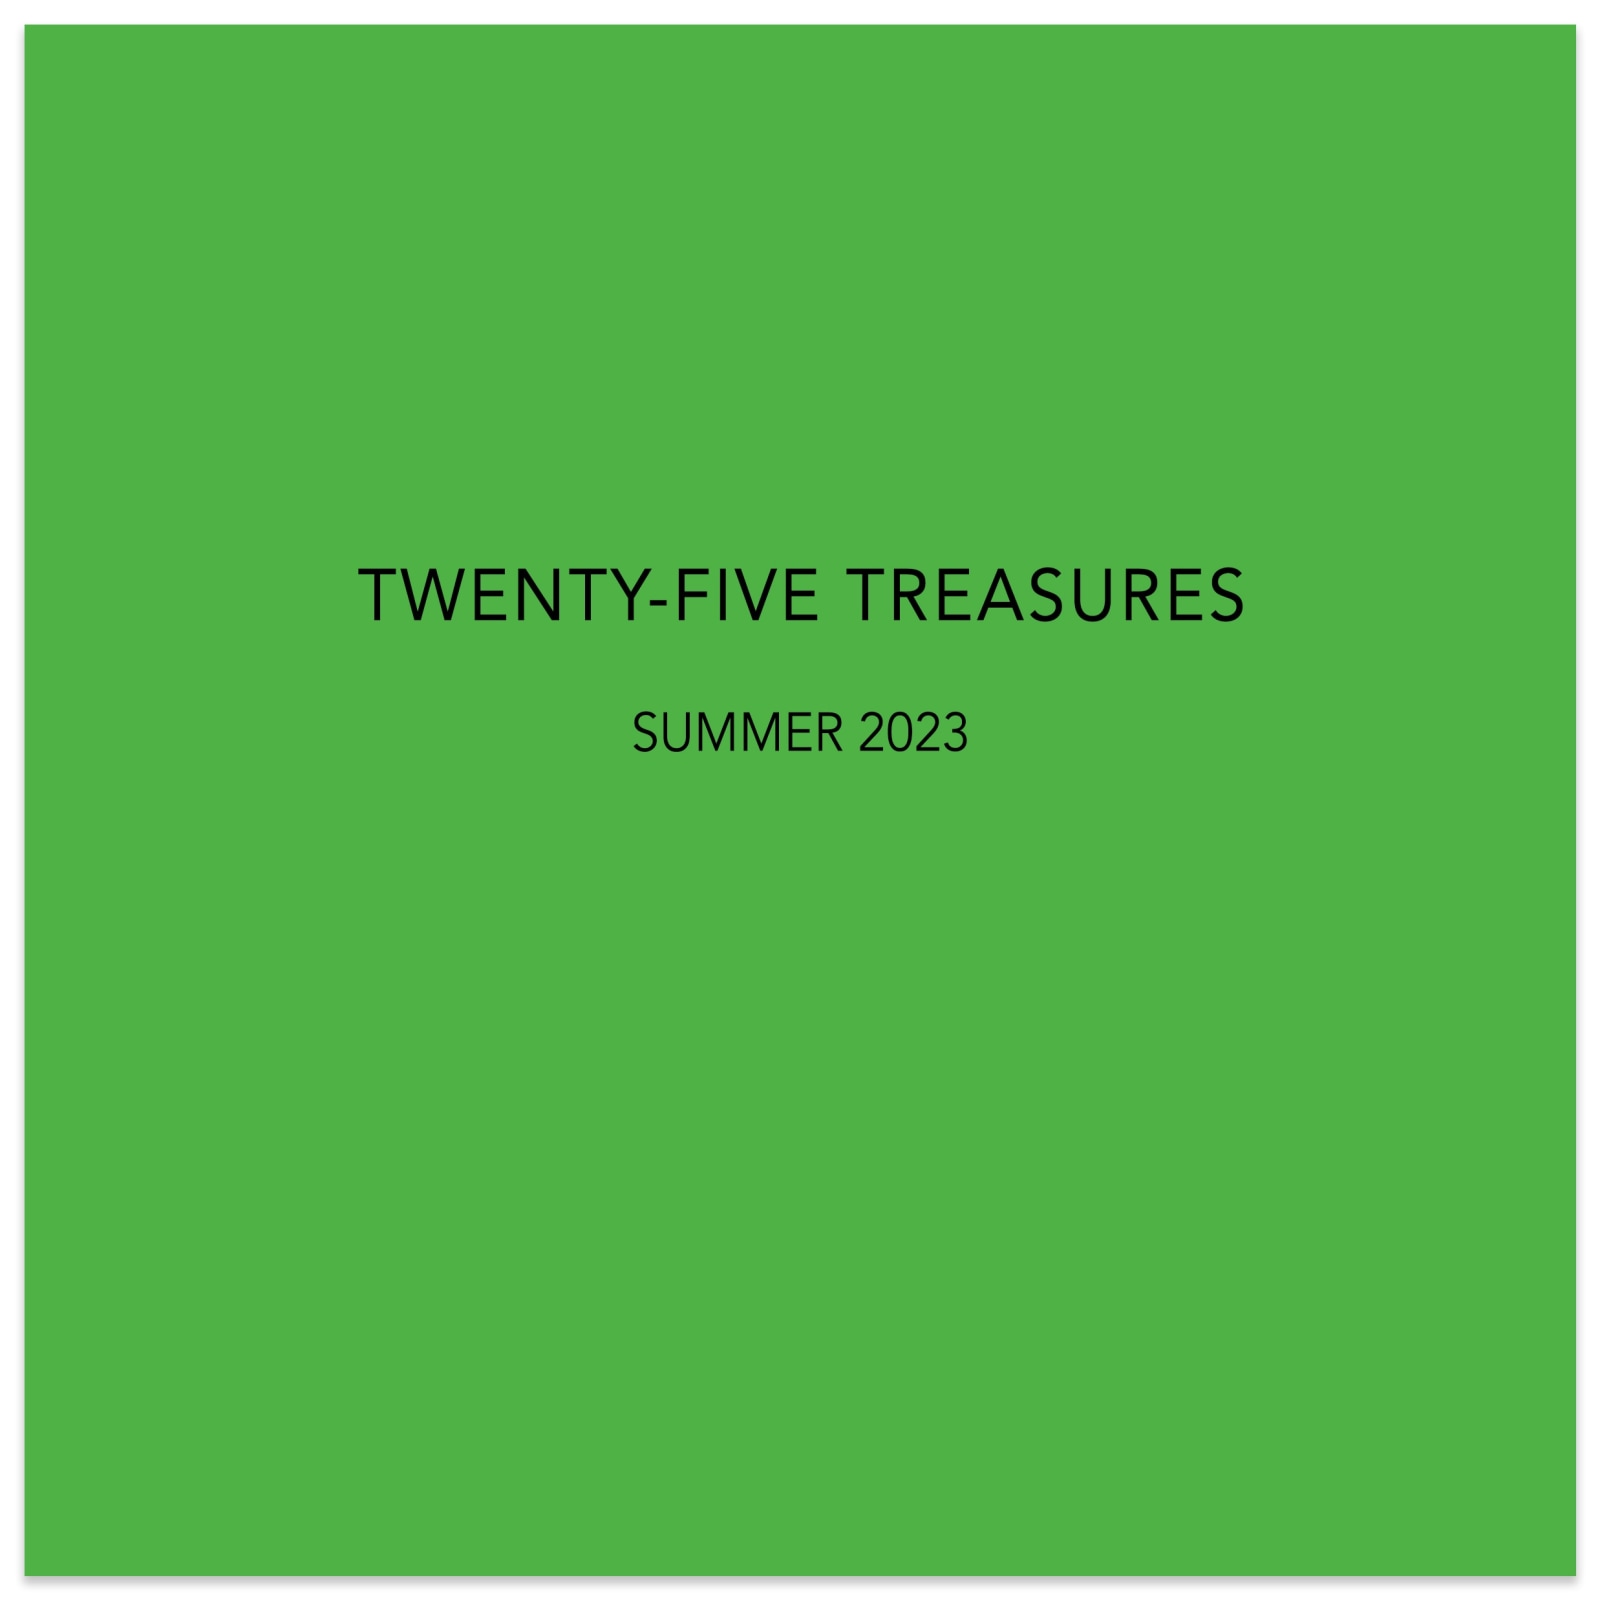 TWENTY-FIVE TREASURES - July 6 - August 19, 2023 - Publications - Paul Thiebaud Gallery